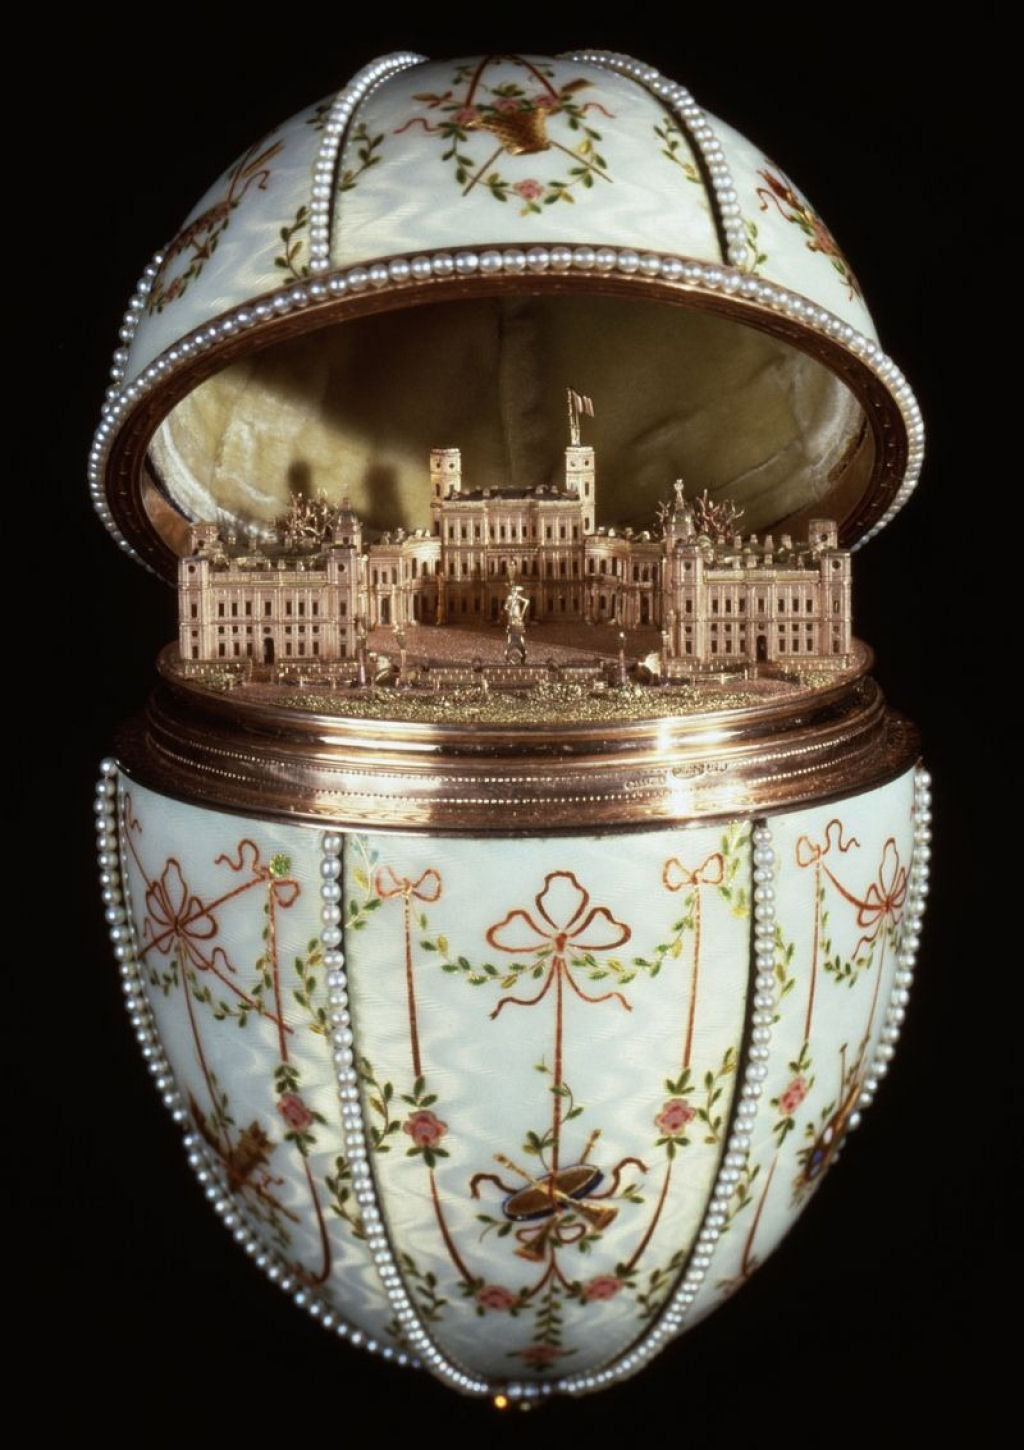 Os deslumbrantes ovos Fabergé da Família Imperial Russa 08